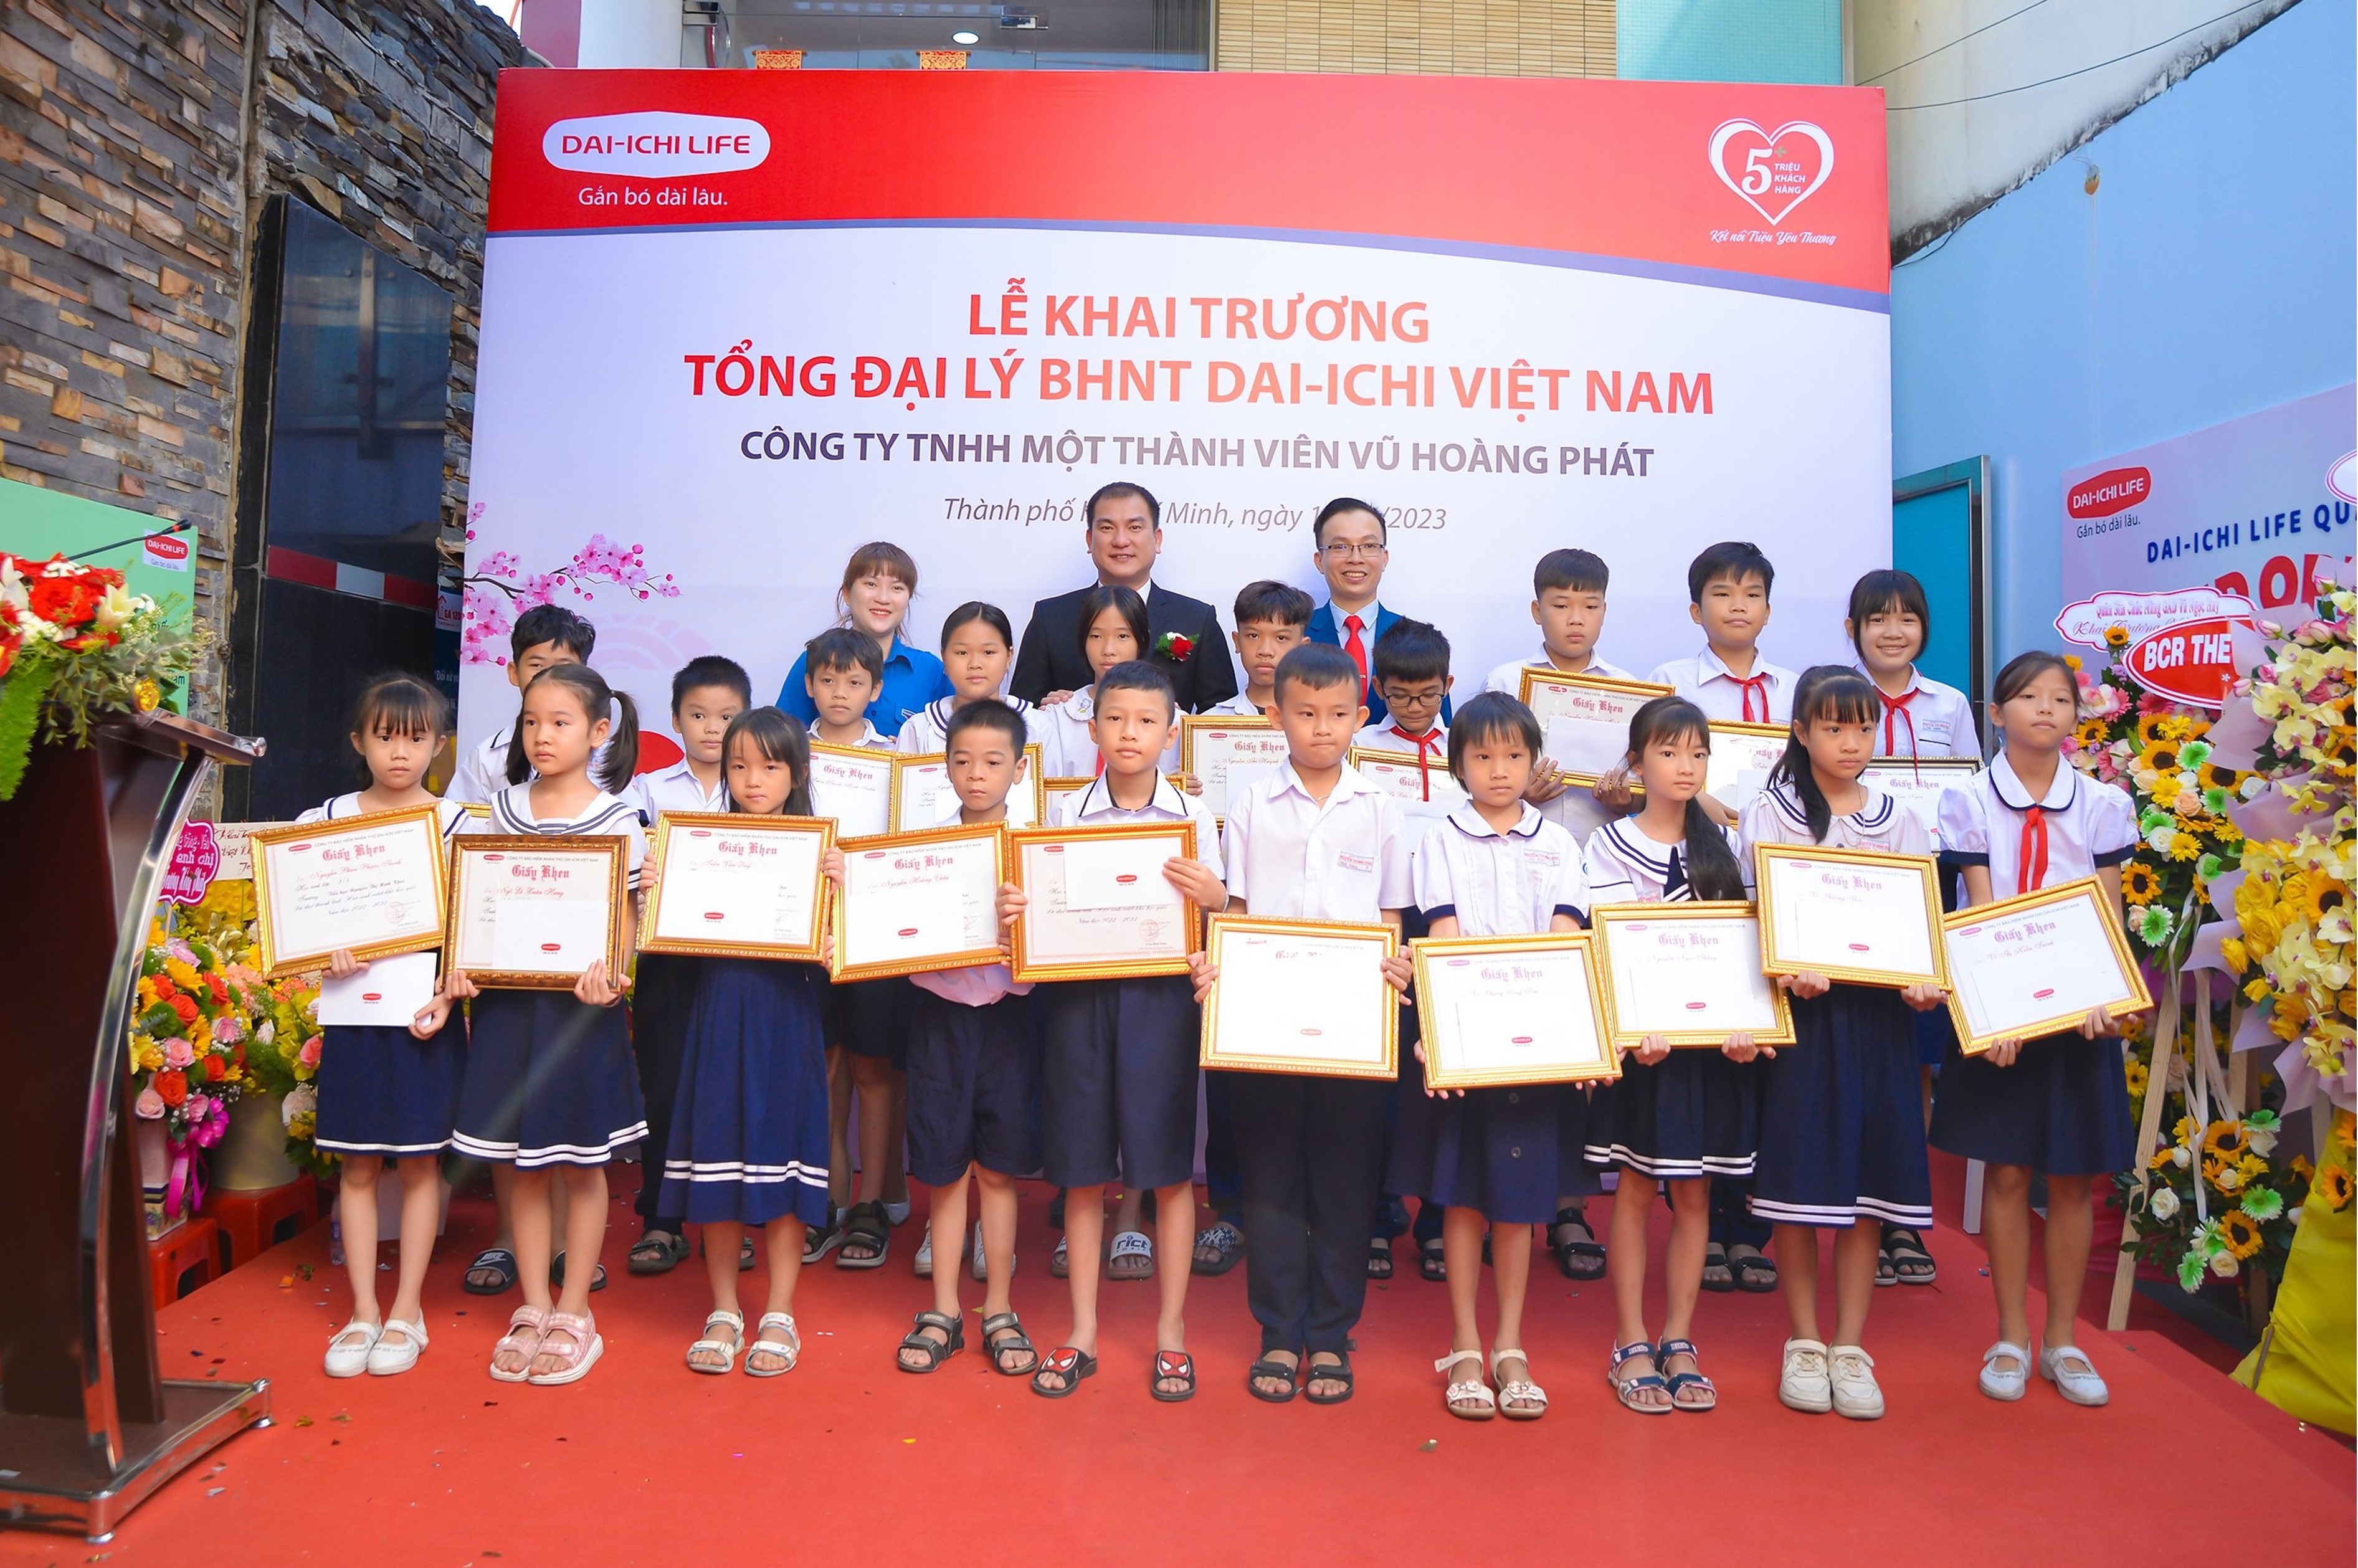  Dai-ichi Life Việt Nam trao 20 suất học bổng cho học sinh vuọt khó học giỏi trên địa bàn Quận 12, TP. Hồ Chí Minh